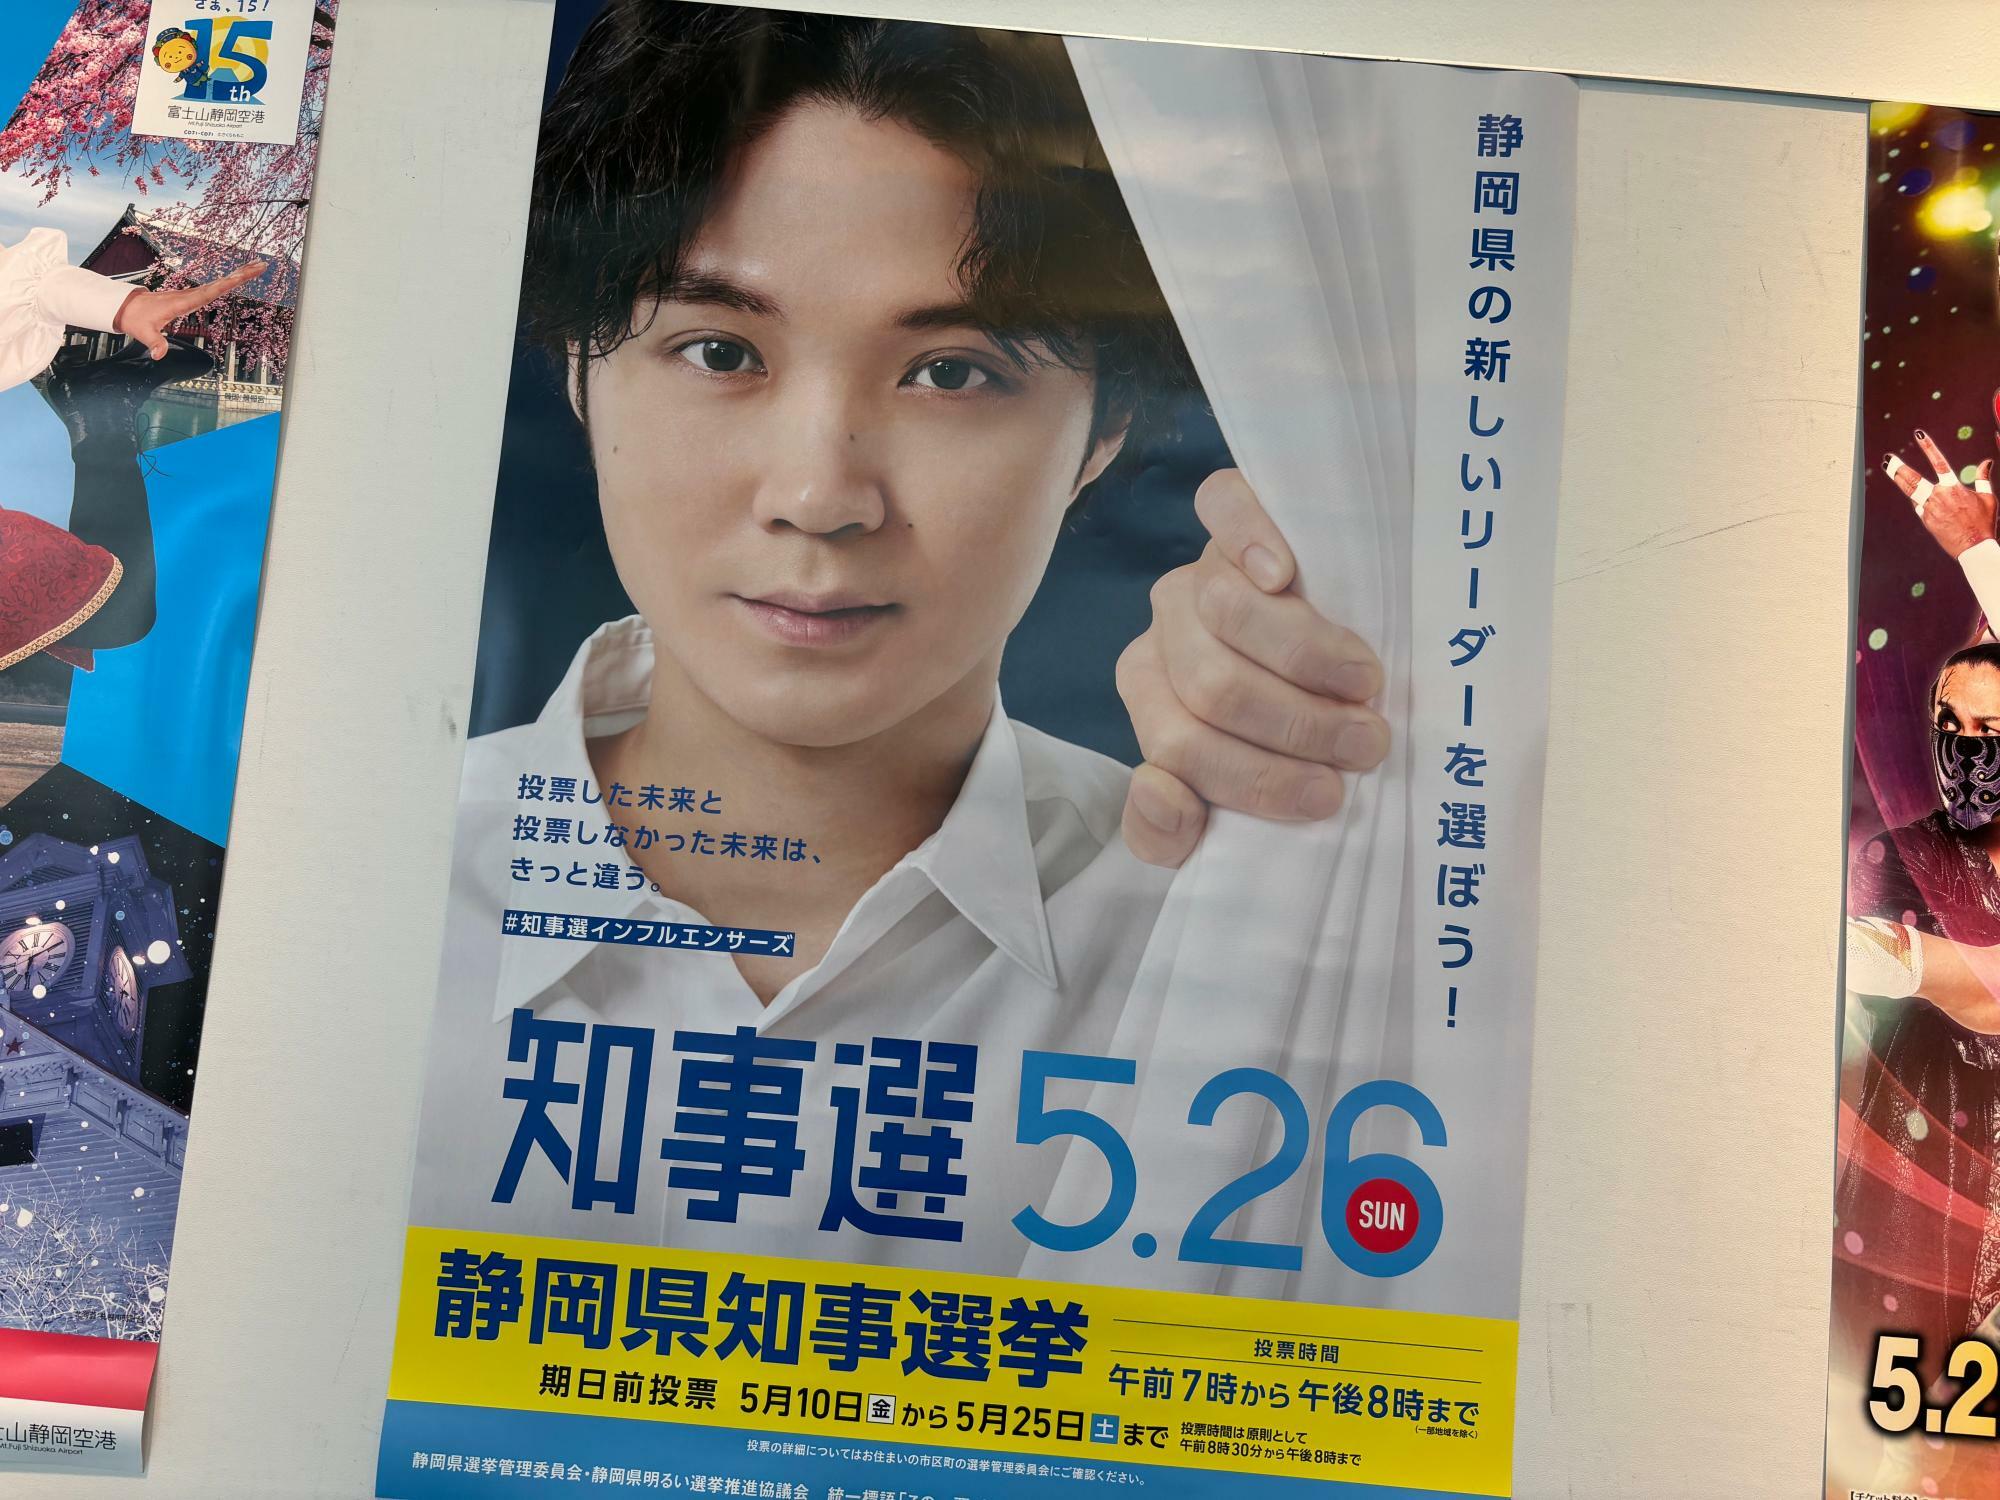 5月26日が投票日の静岡県知事選挙